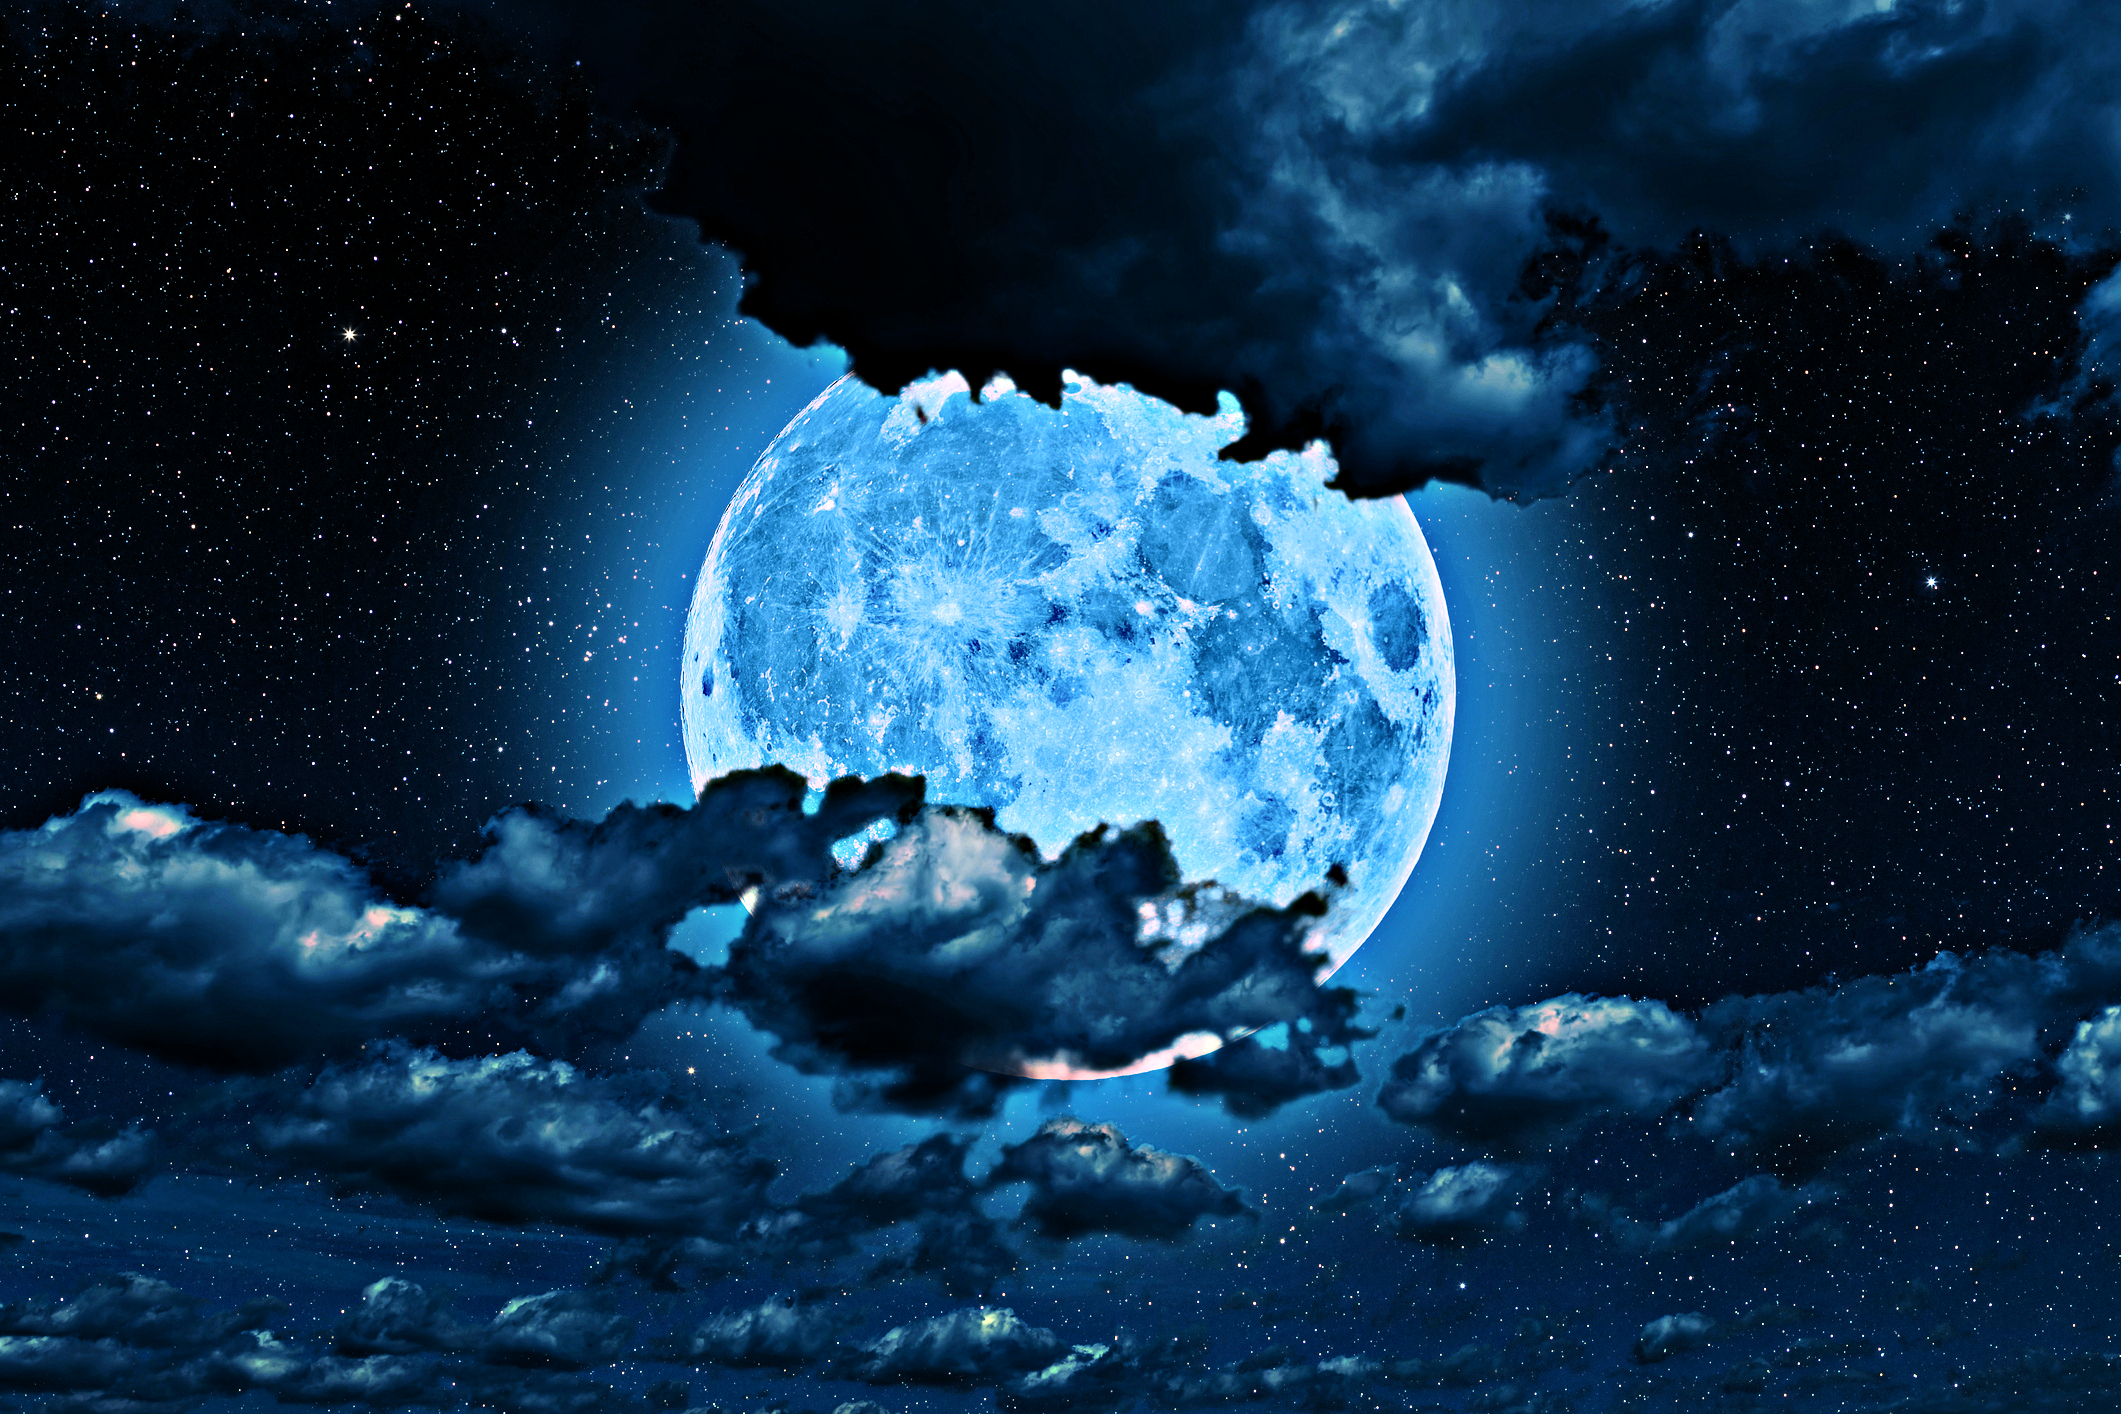 luna albastra, pe un cer instelat si cu nori proeminenti